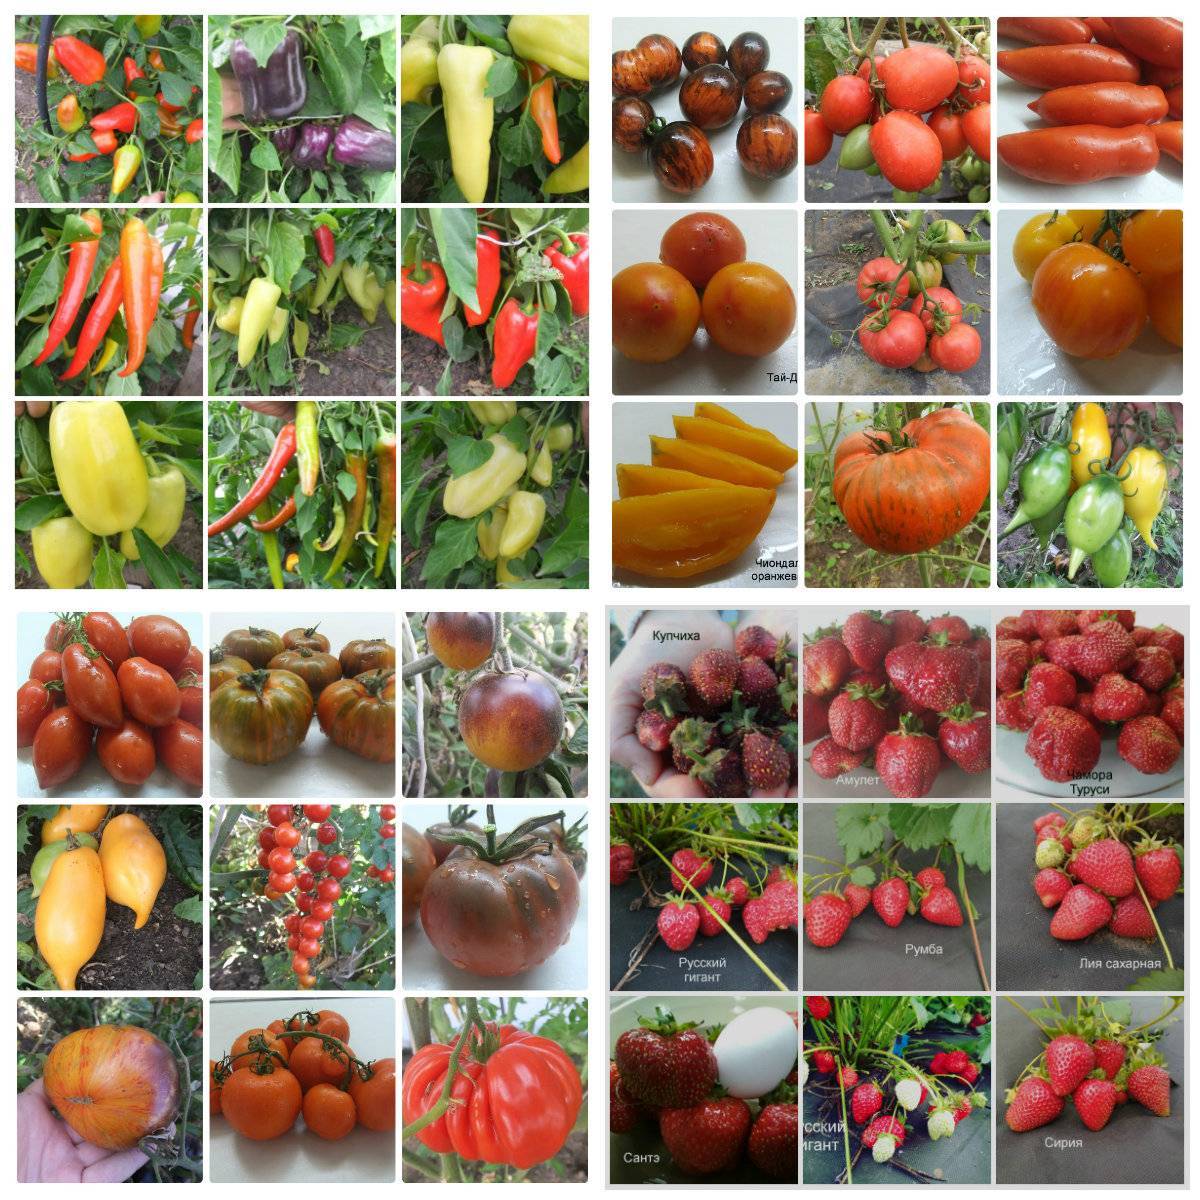 Какие сорта томатов предлагают коллекционеры на 2020 год: наименования и описания